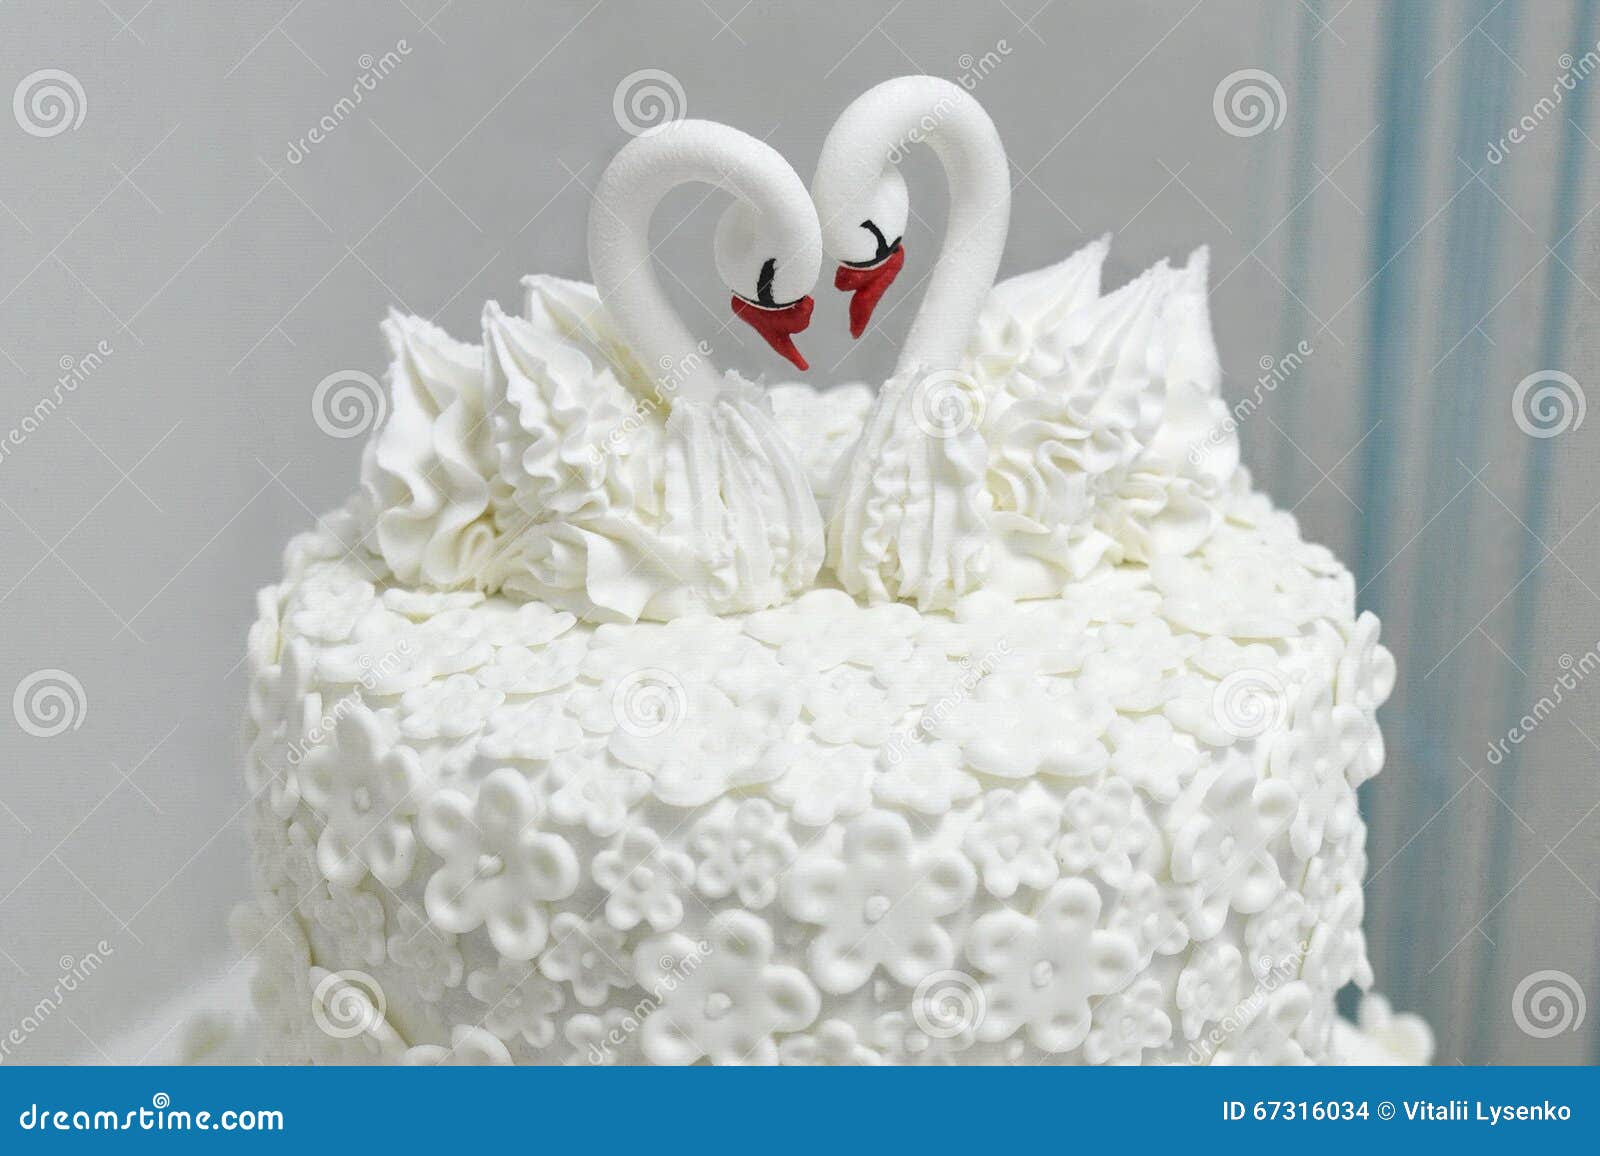 Свадебный торт с лебедями и розами